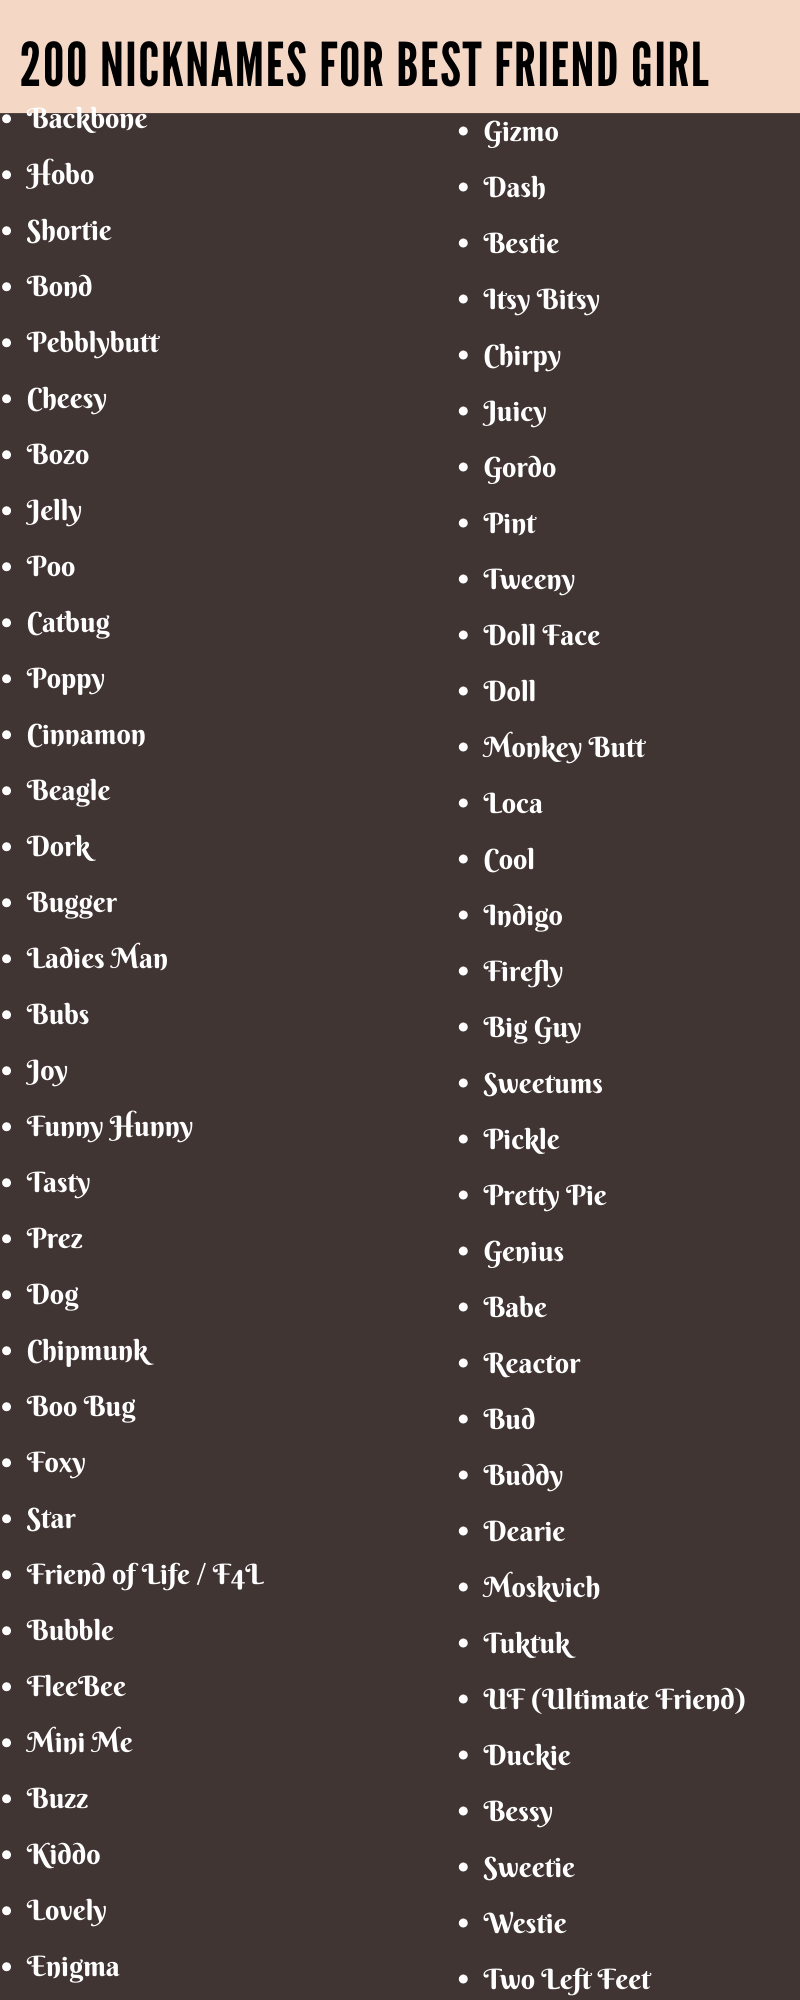 nicknames for best friend girl